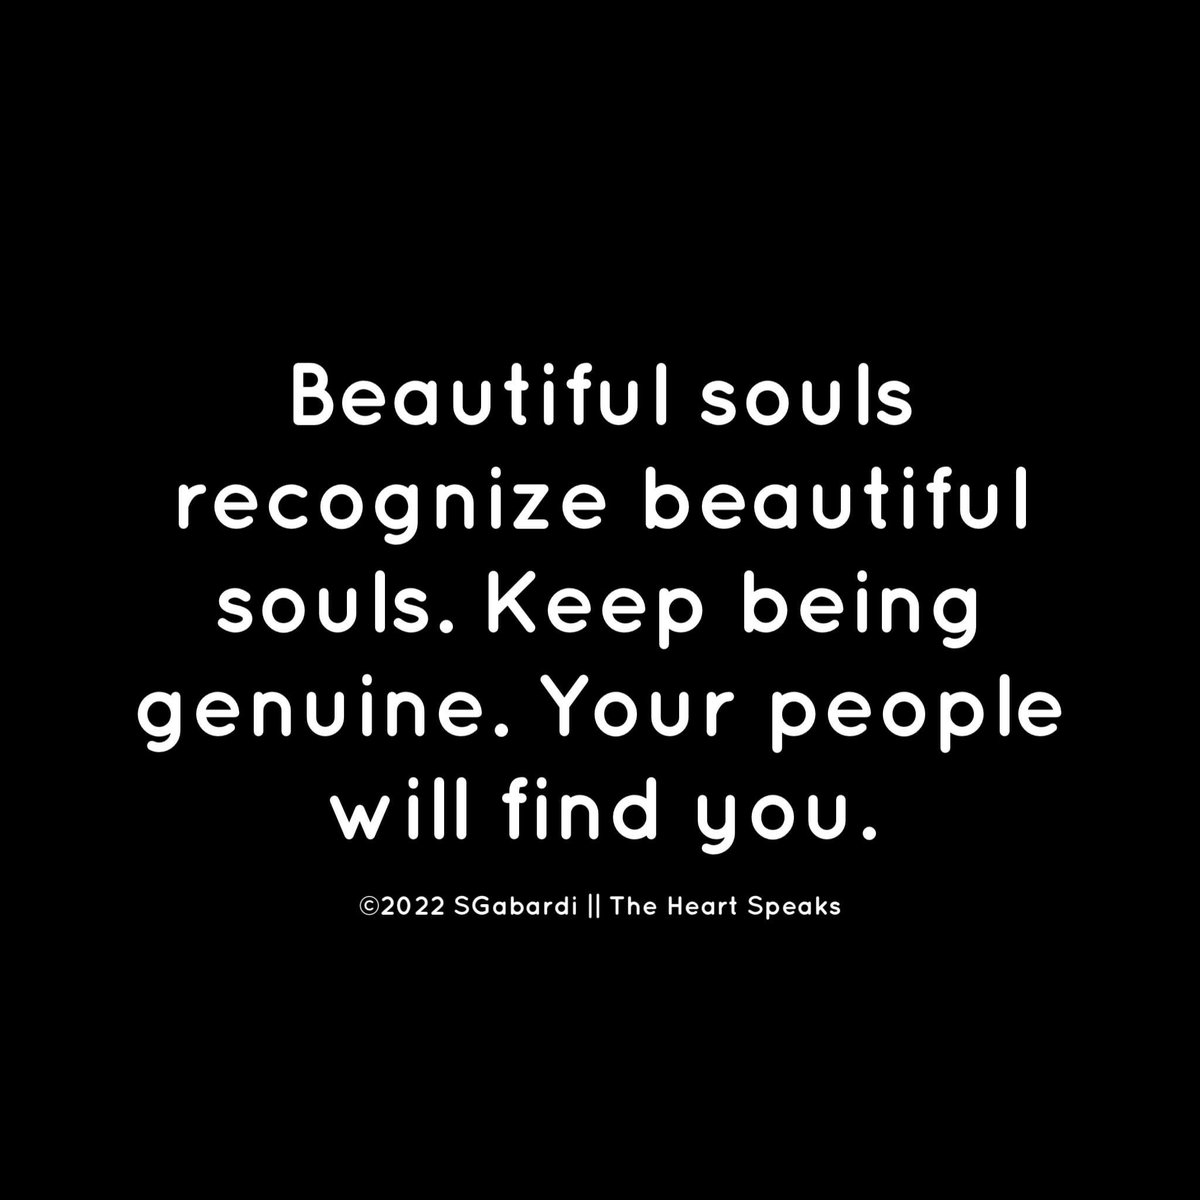 Speaking of souls. 😉